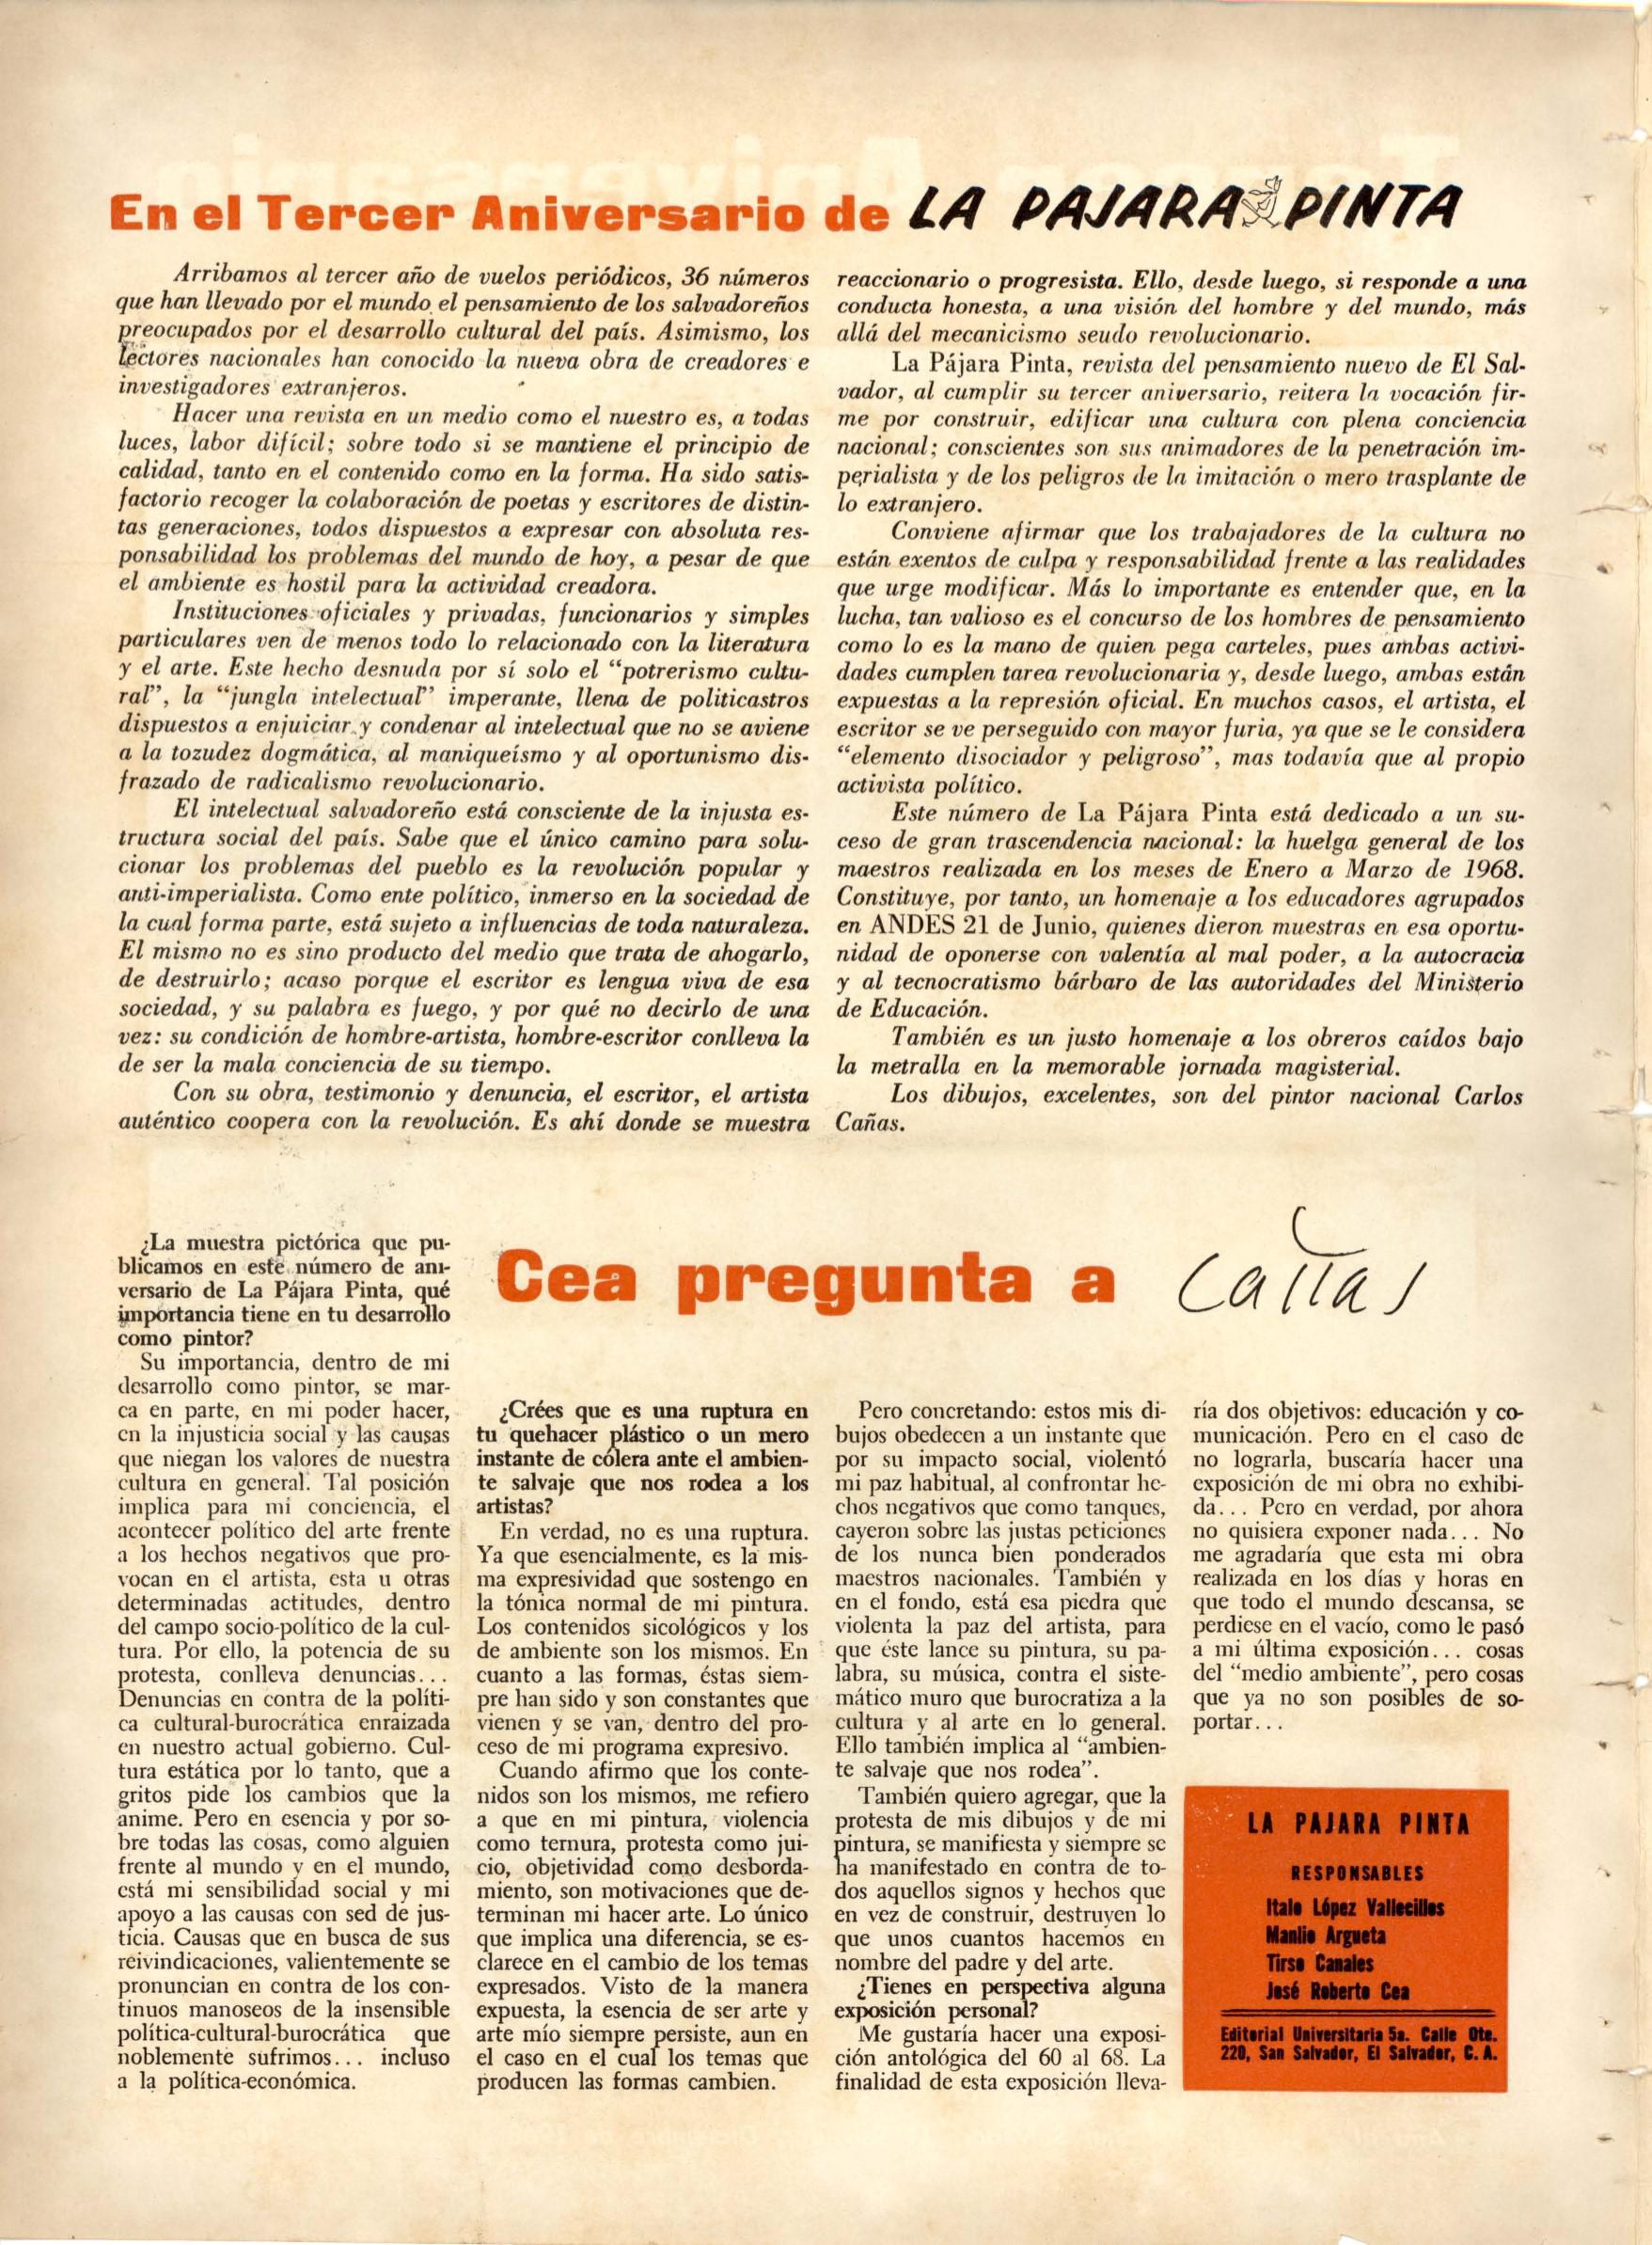 Este editorial, publicado en diciembre de 1968, marcó hito en la radicalización de los intelectuales salvadoreños.